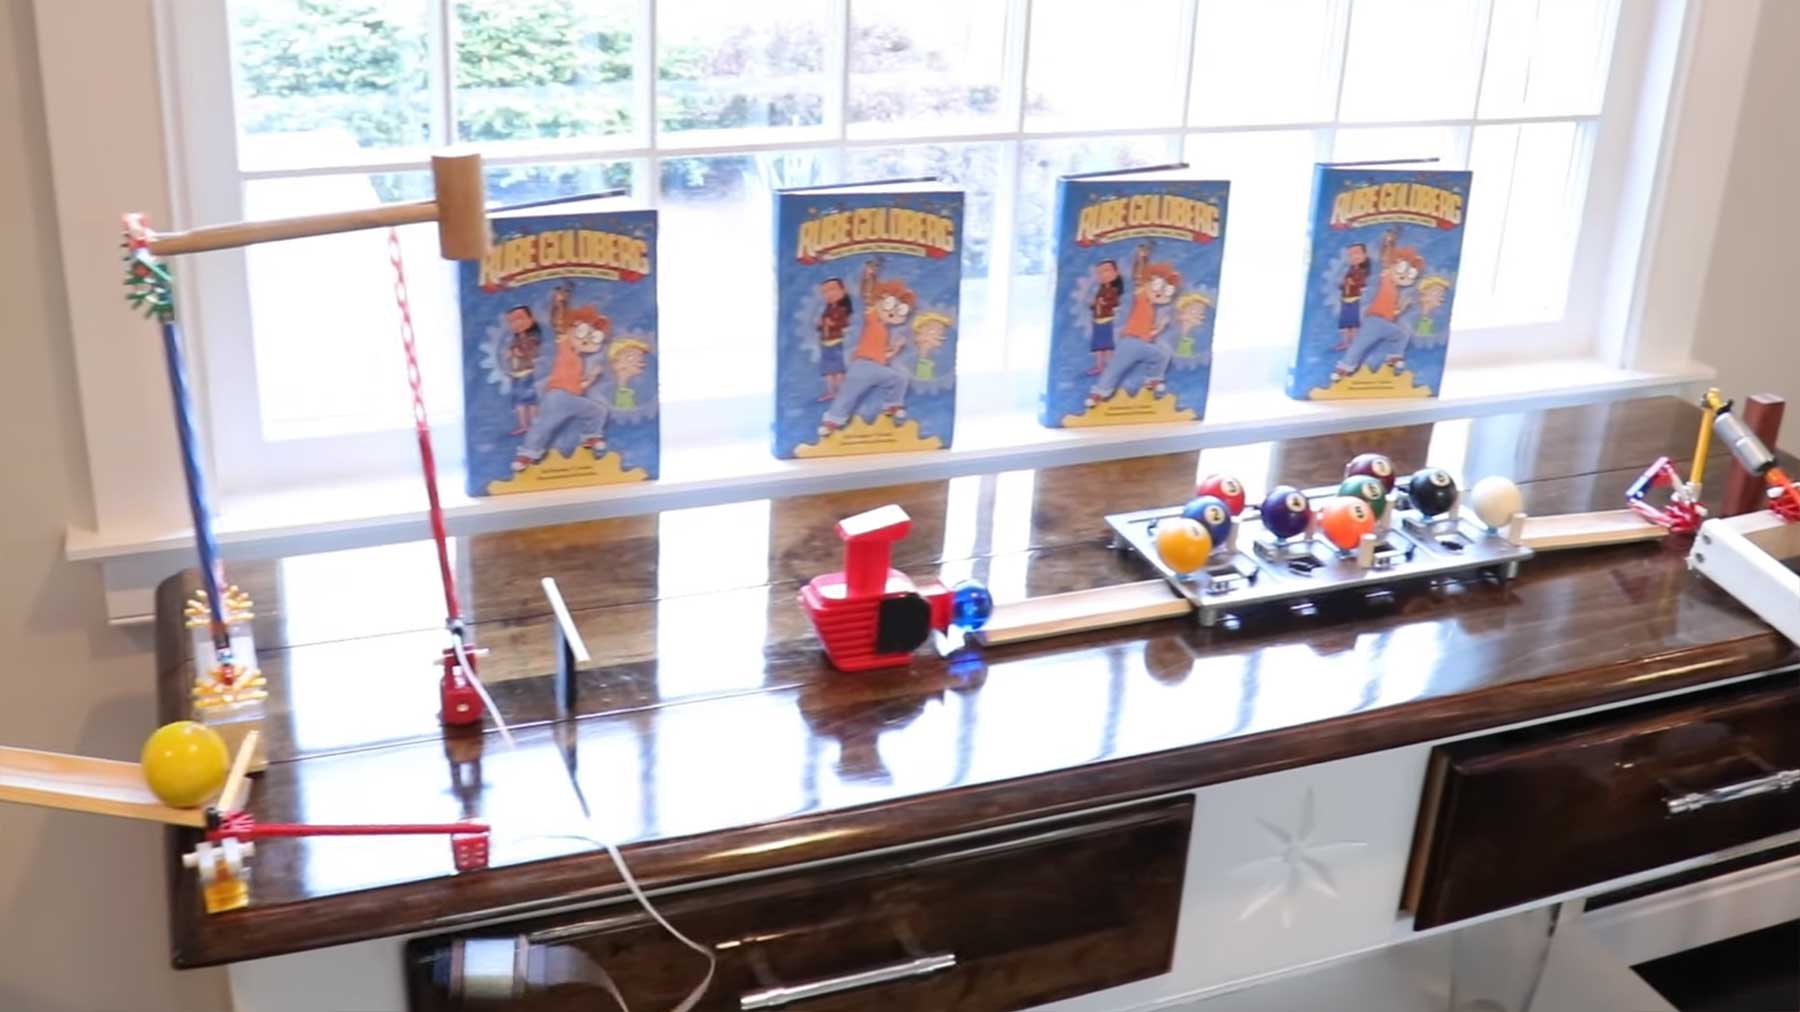 Rube Goldberg Machine, um ein Buch zu öffnen